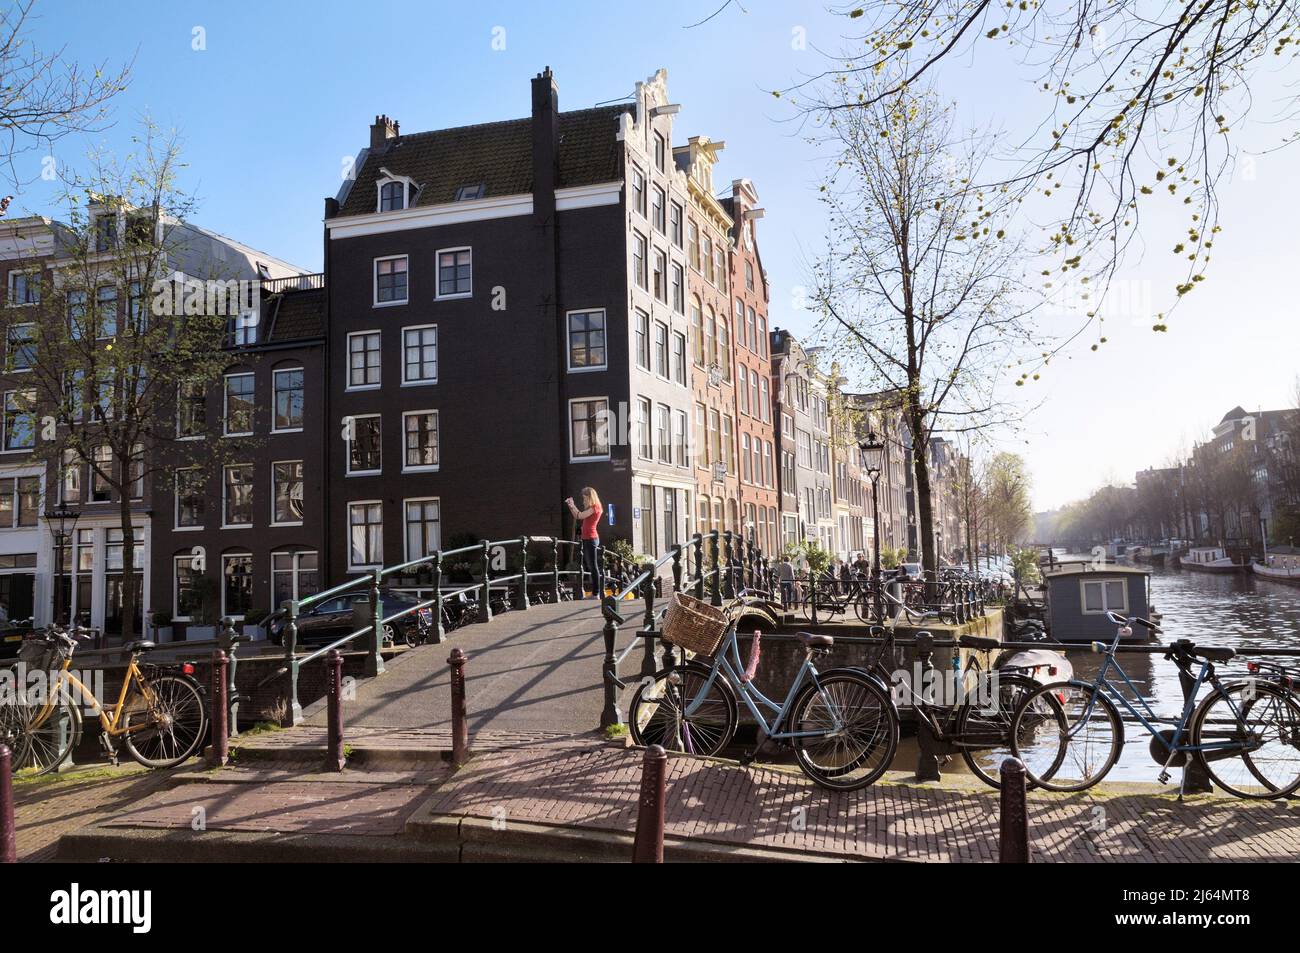 Giovane donna che scatta una foto su un ponte all'angolo tra Brouwersgracht e Herengracht Canal, Jordaan, Amsterdam, Olanda settentrionale, Paesi Bassi, Europa Foto Stock